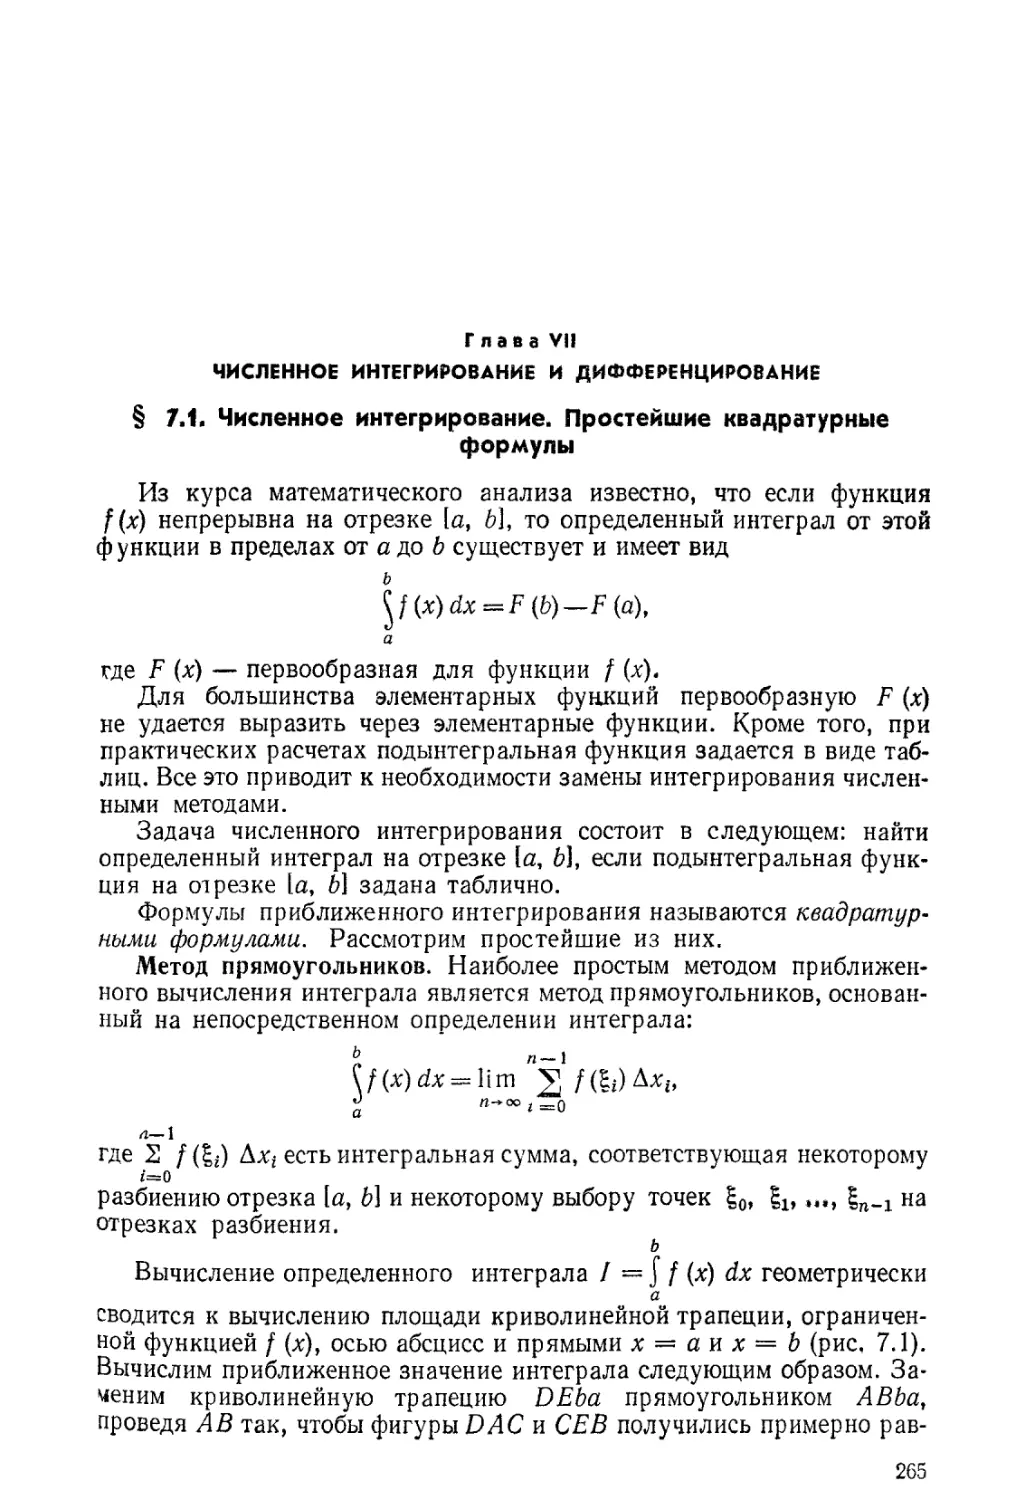 ГЛАВА VII. ЧИСЛЕННОЕ ИНТЕГРИРОВАНИЕ И ДИФФЕРЕНЦИРОВАНИЕ
§ 7.1. Численное интегрирование. Простейшие квадратурные формулы